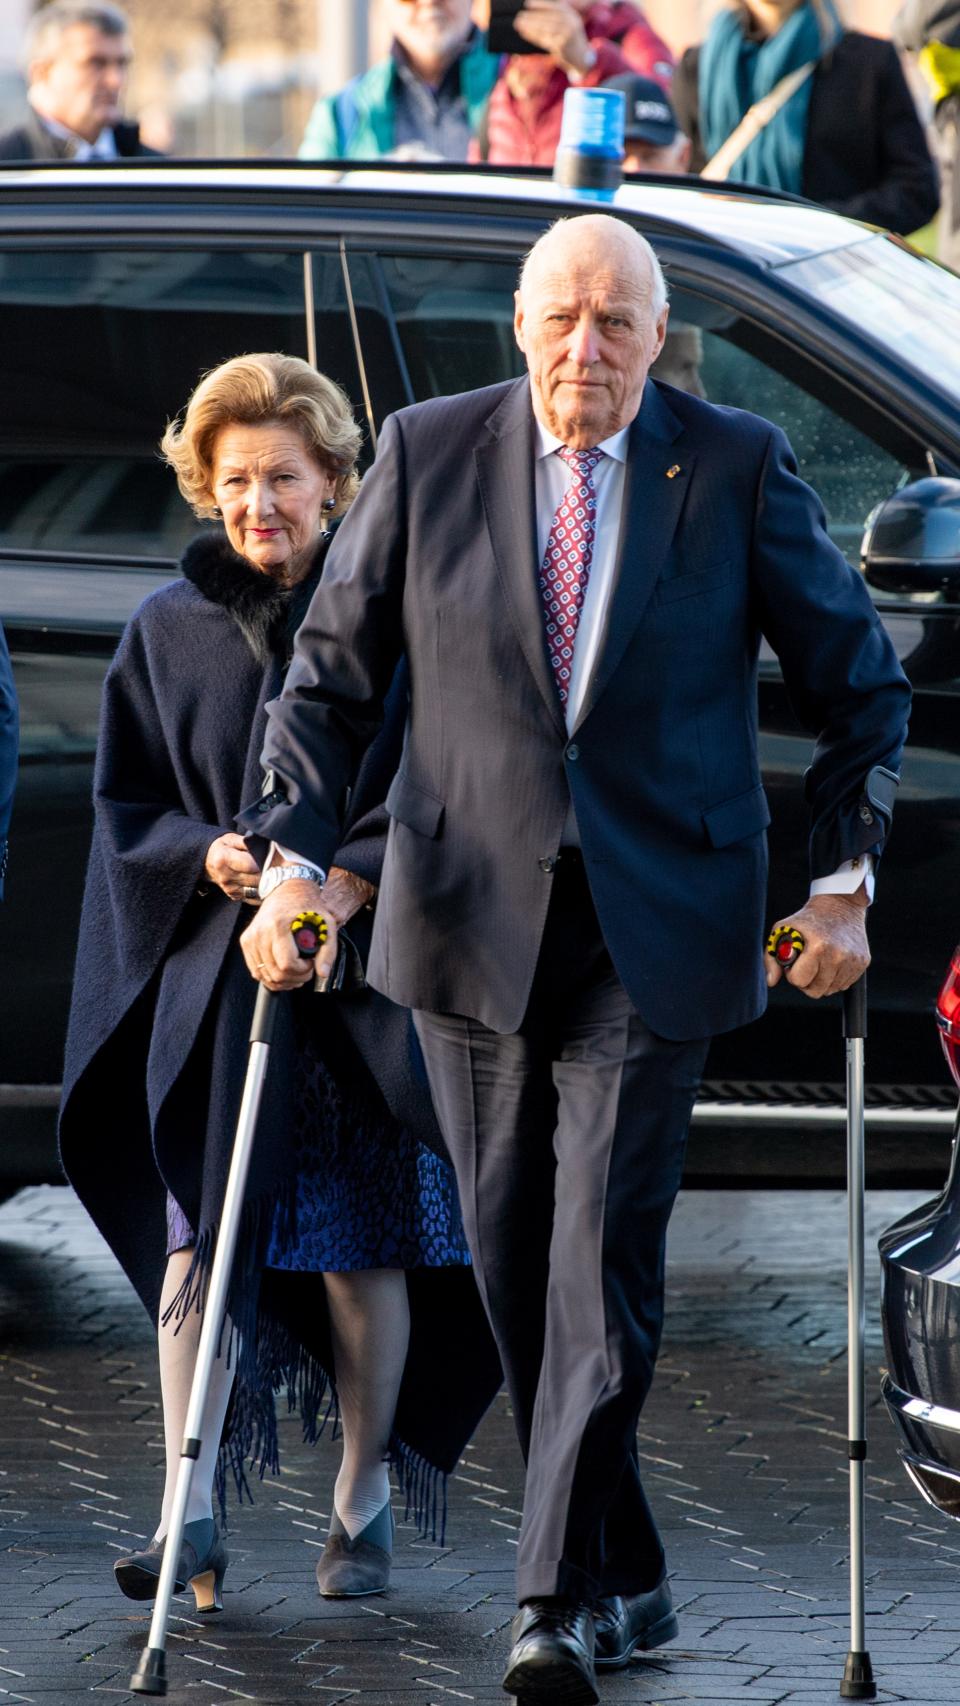 Harald de Noruega en una fotografía tomada en Oslo, en 2021, junto a su mujer.